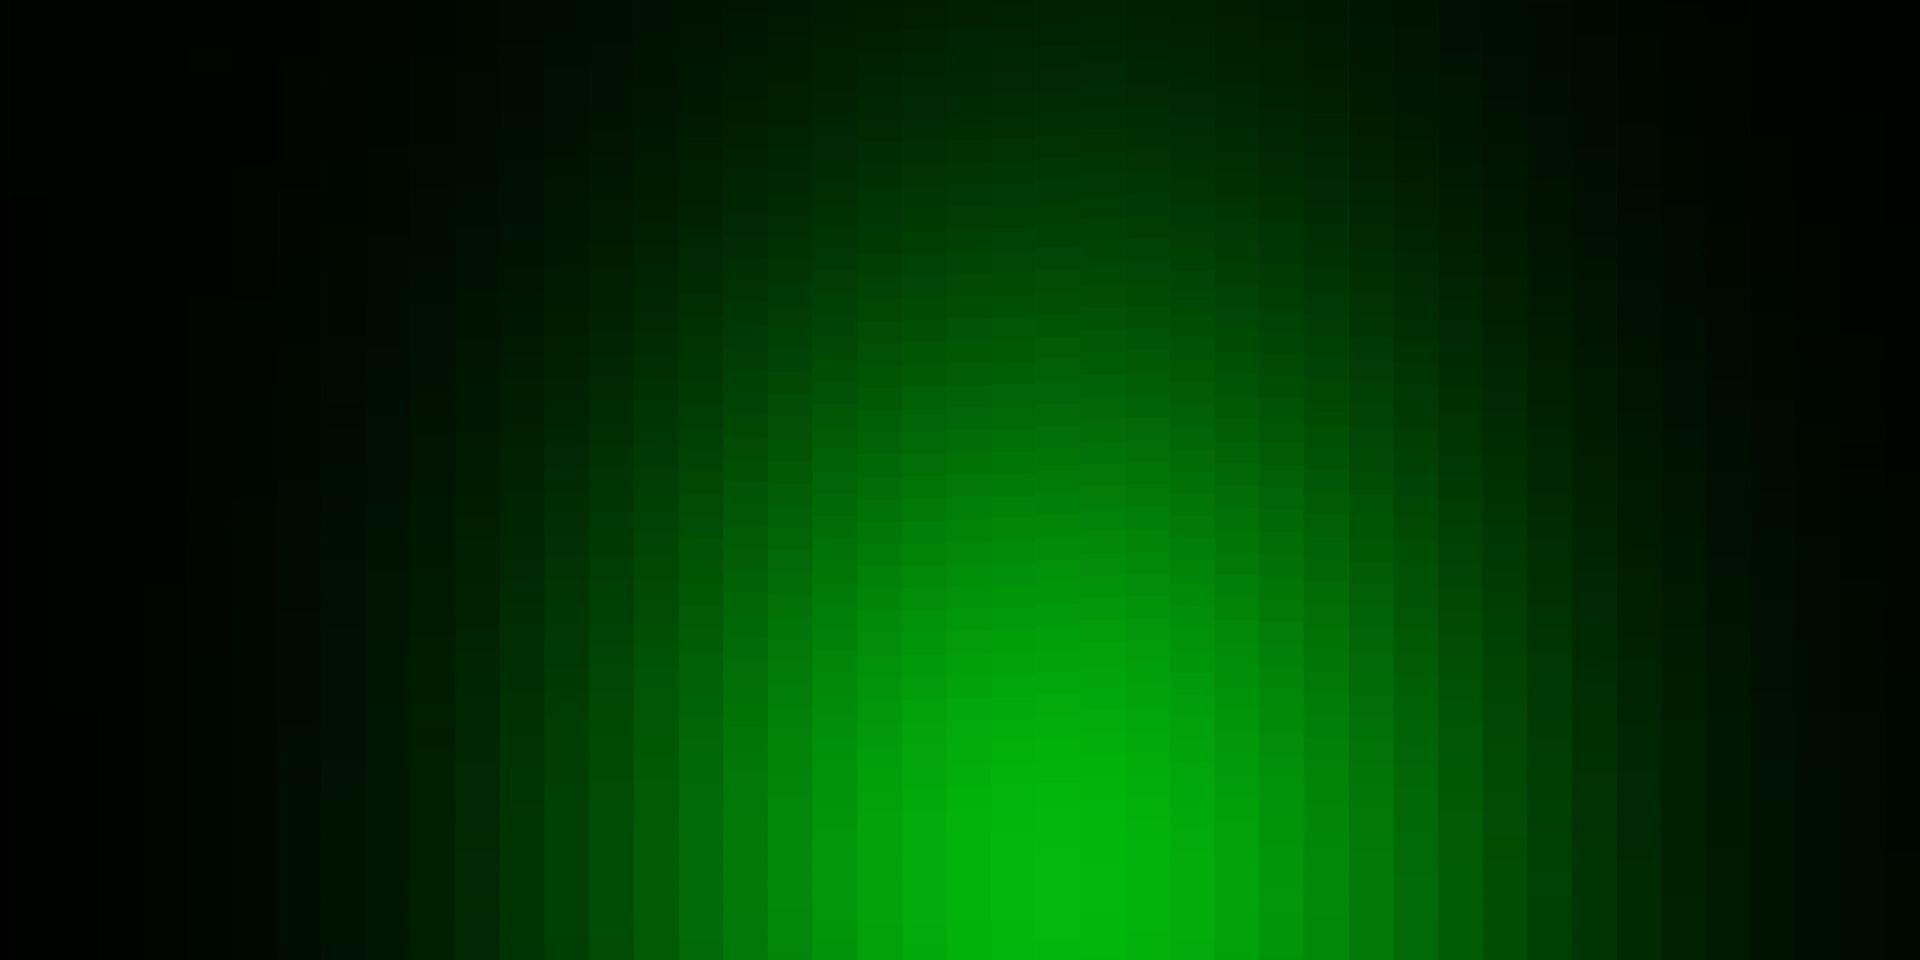 mörkgrön vektorlayout med linjer, rektanglar. vektor